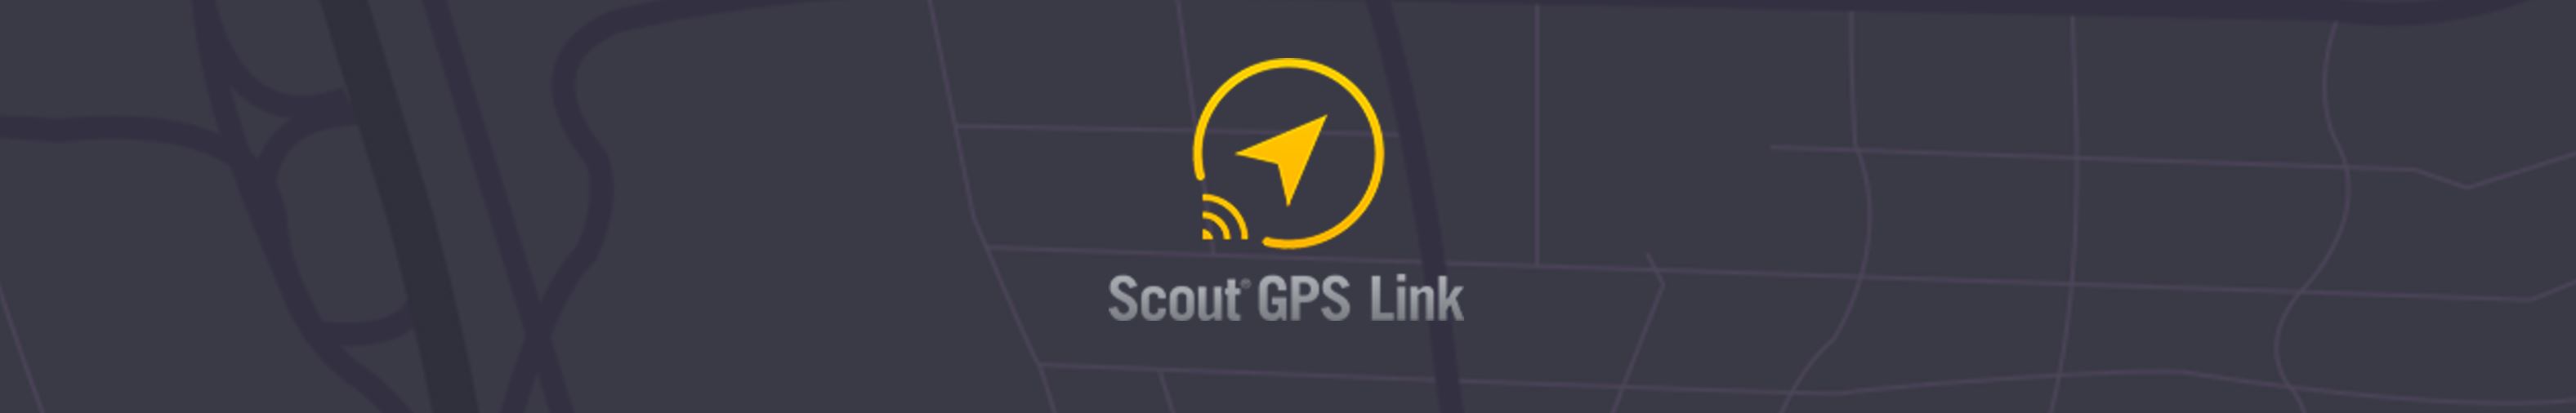 اپلیکیشن ردیابی و نقشه خوانی Scout GPS - جهان ردیاب